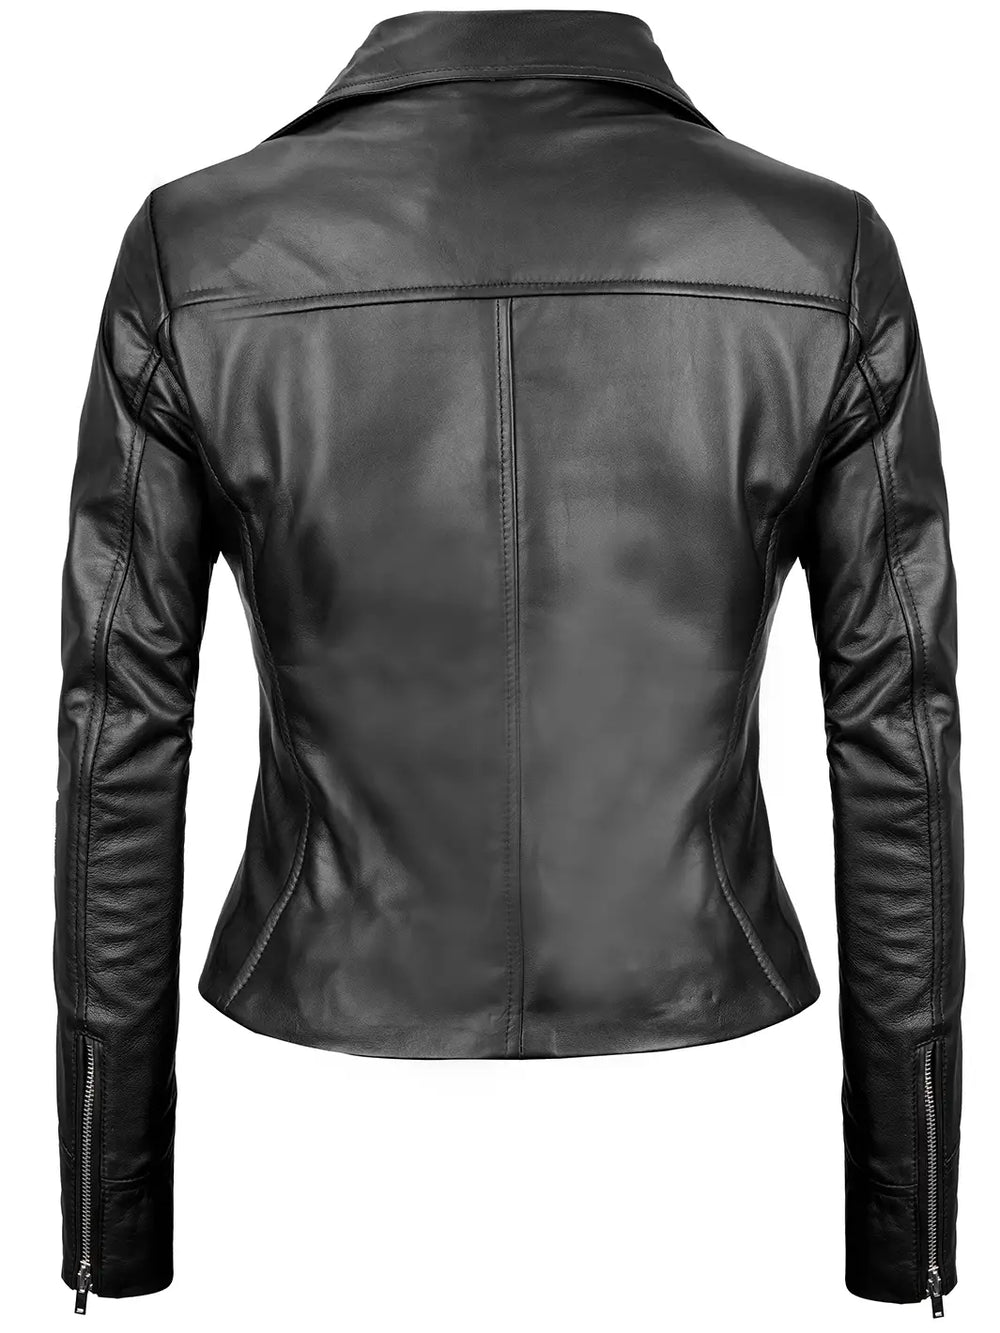 Black leather moto jacket